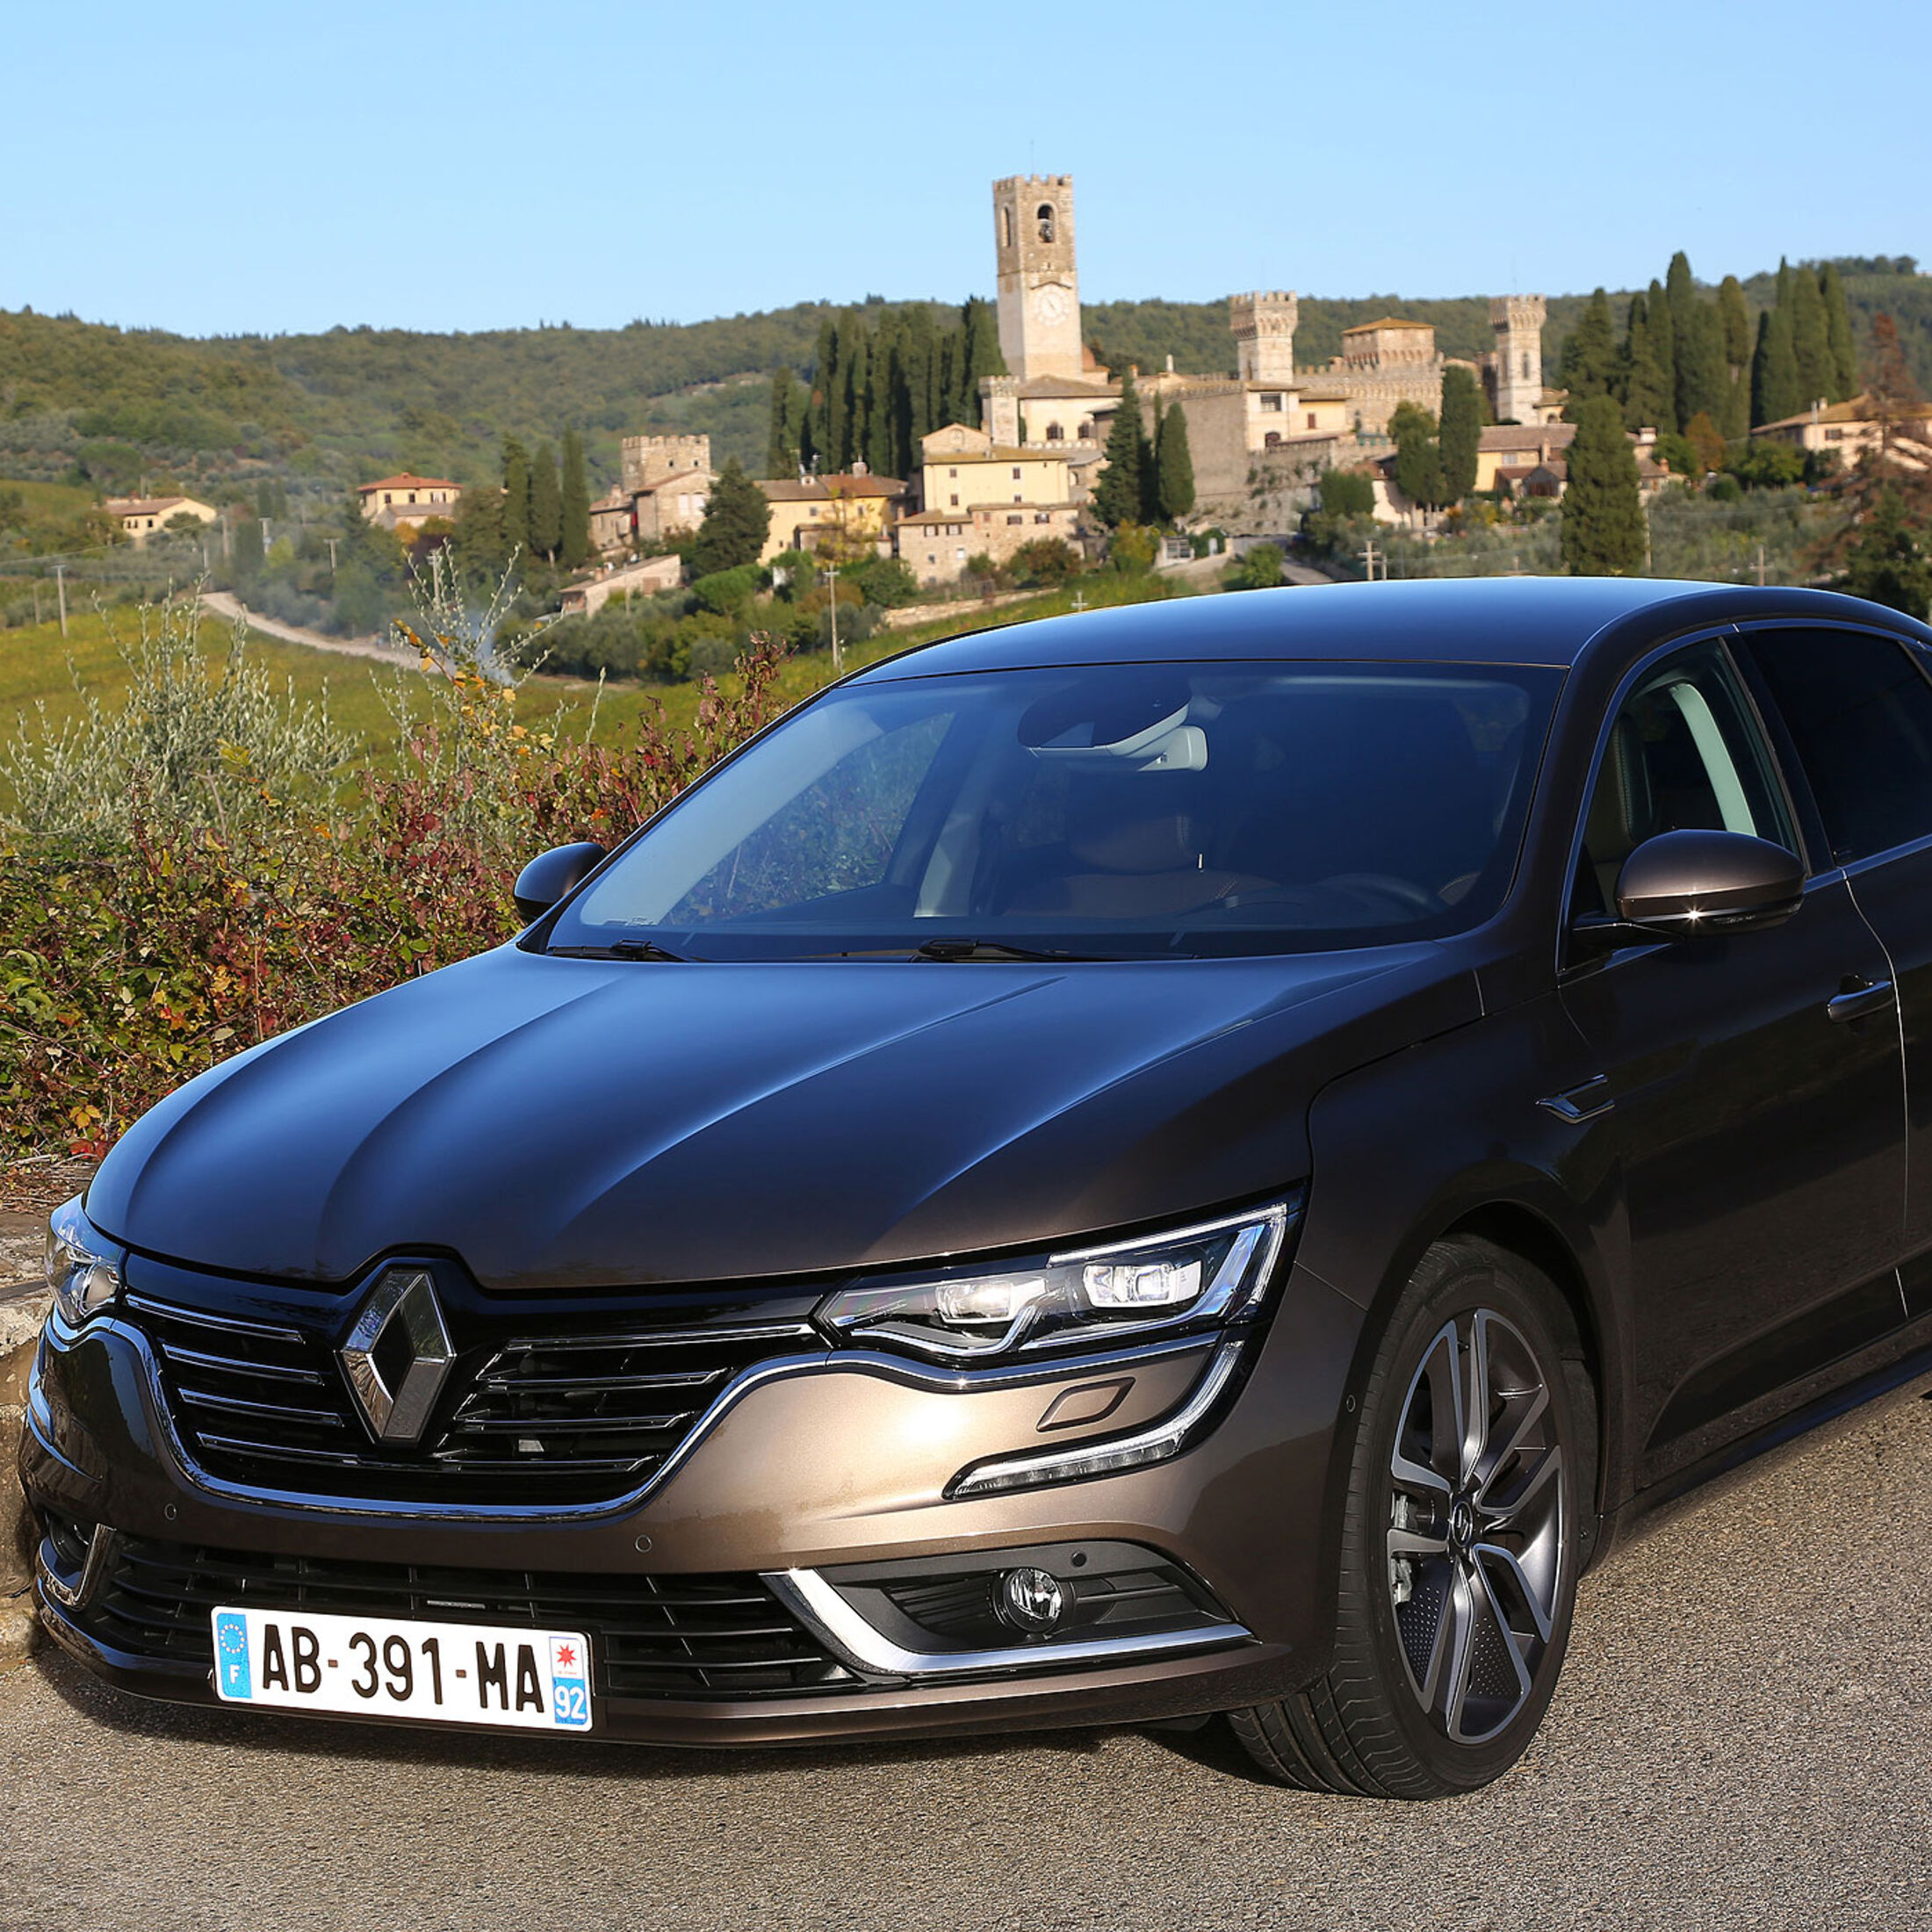 https://imgr1.auto-motor-und-sport.de/11-2015-Renault-Talisman-Fahrbericht-jsonLd1x1-f7677a69-909598.jpg